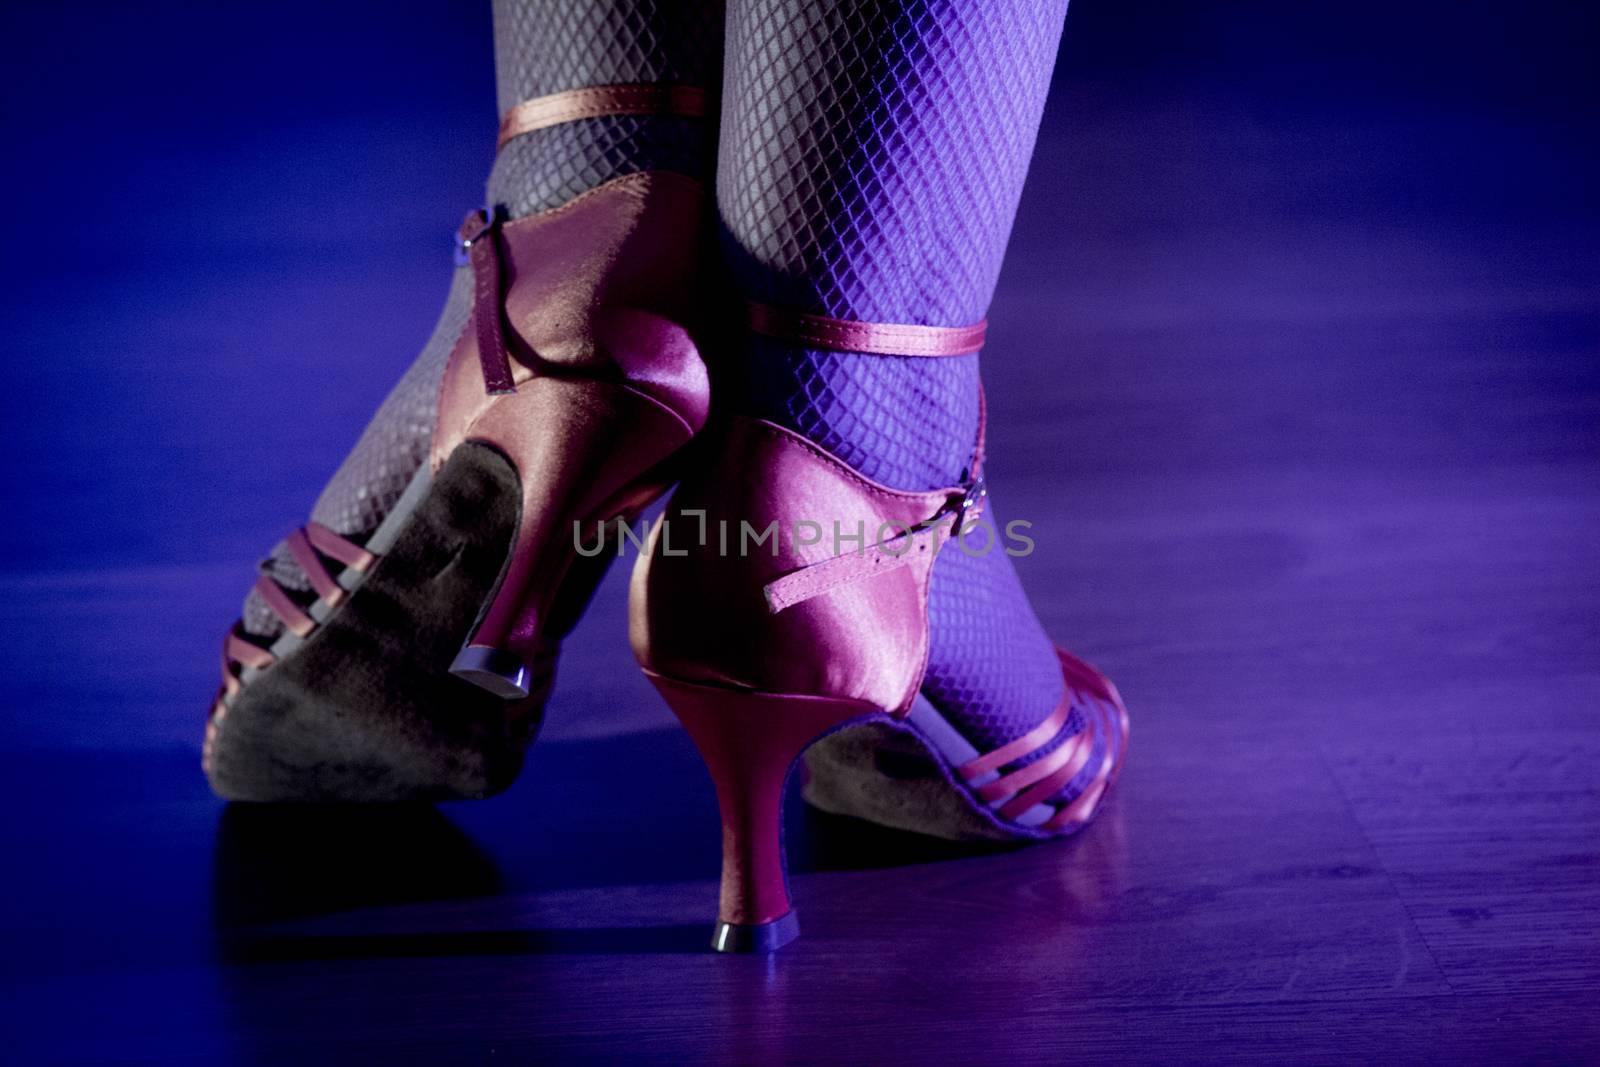 Woman dancing in heels.